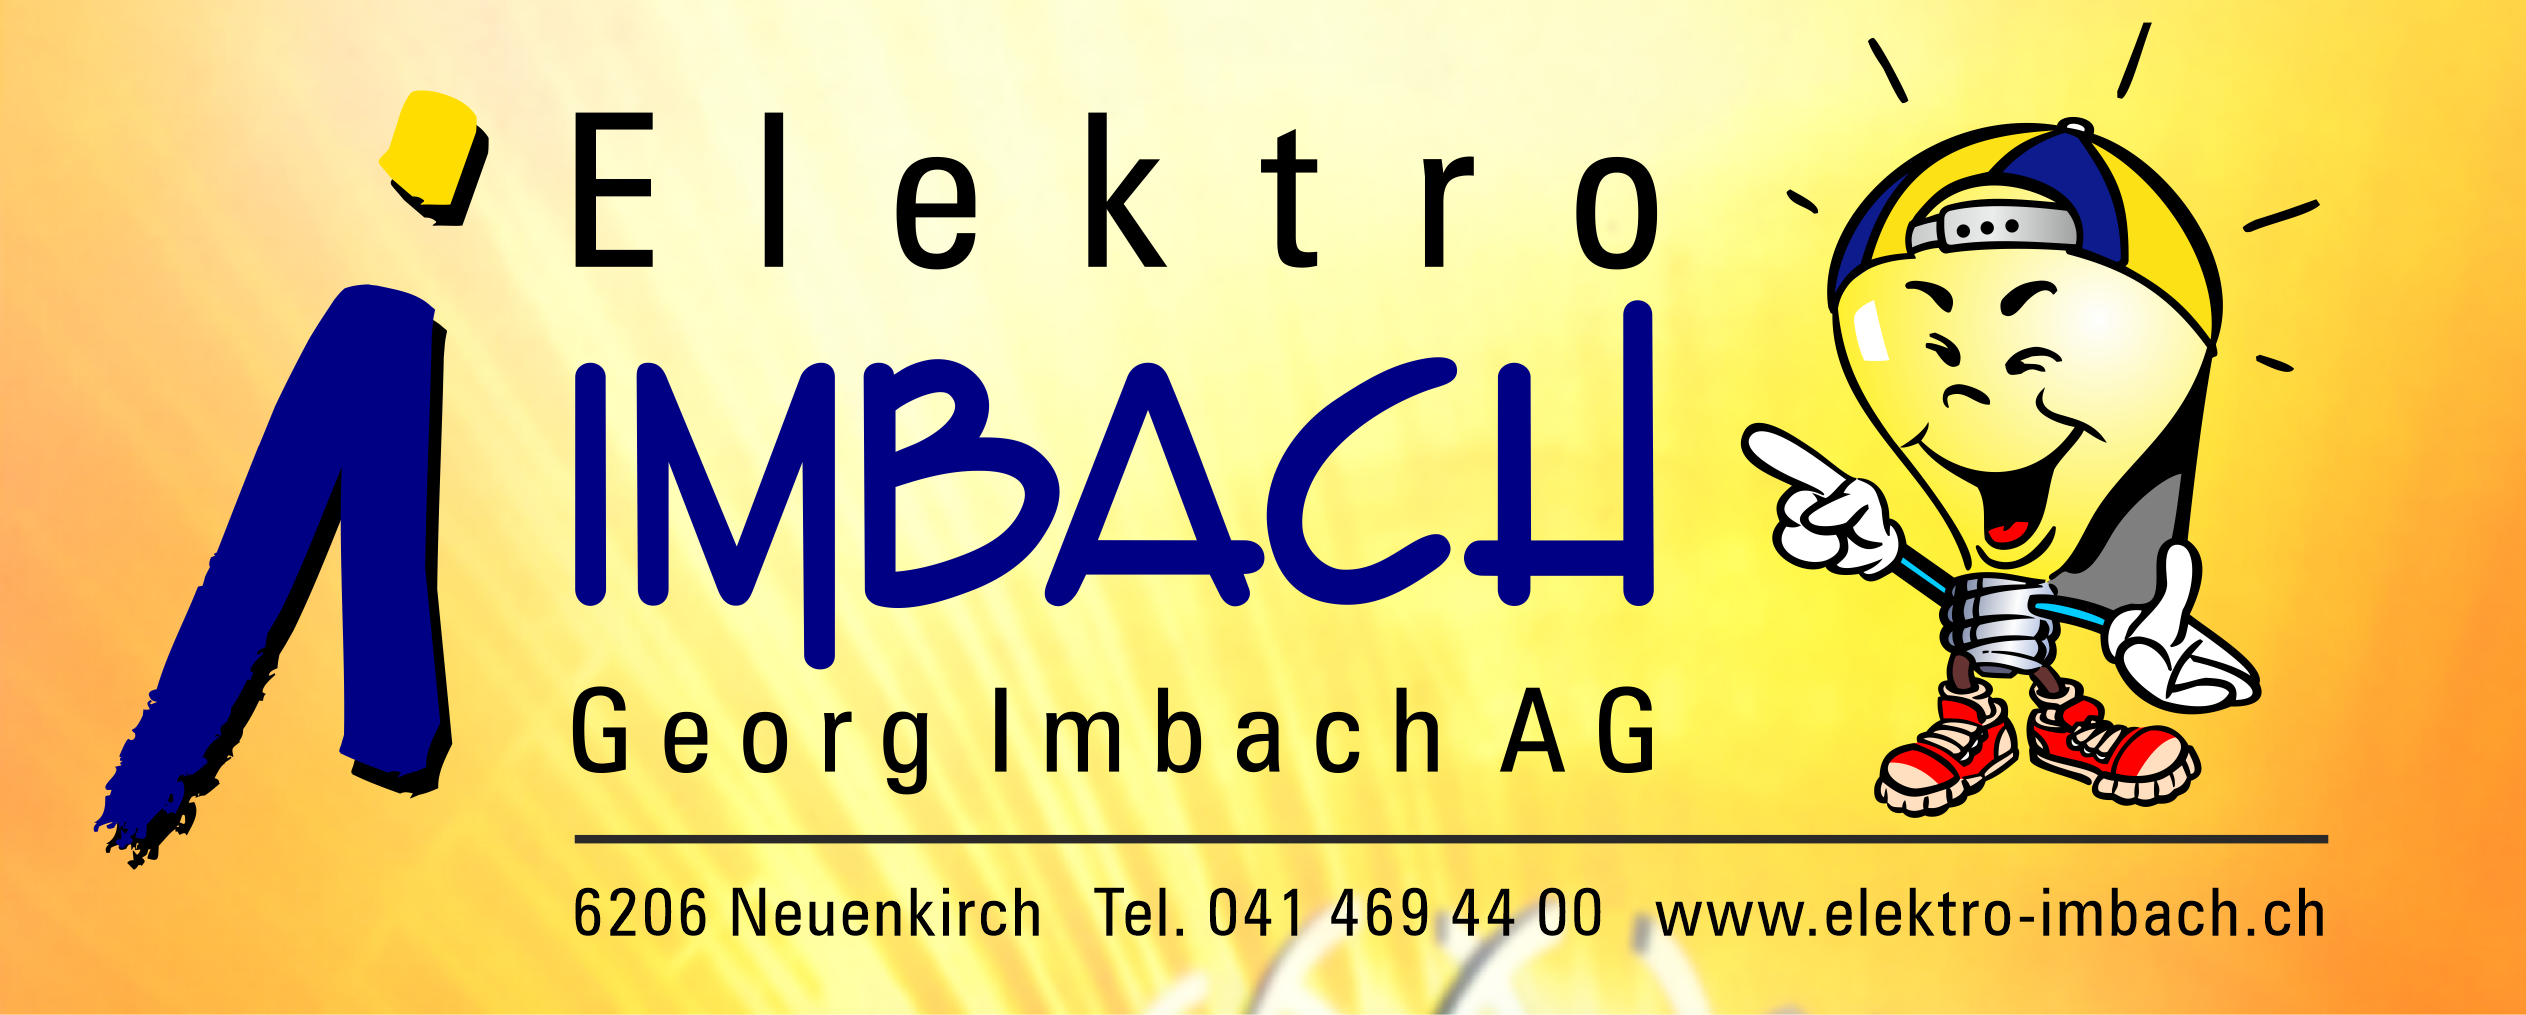 Georg Imbach AG, Neuenkirch